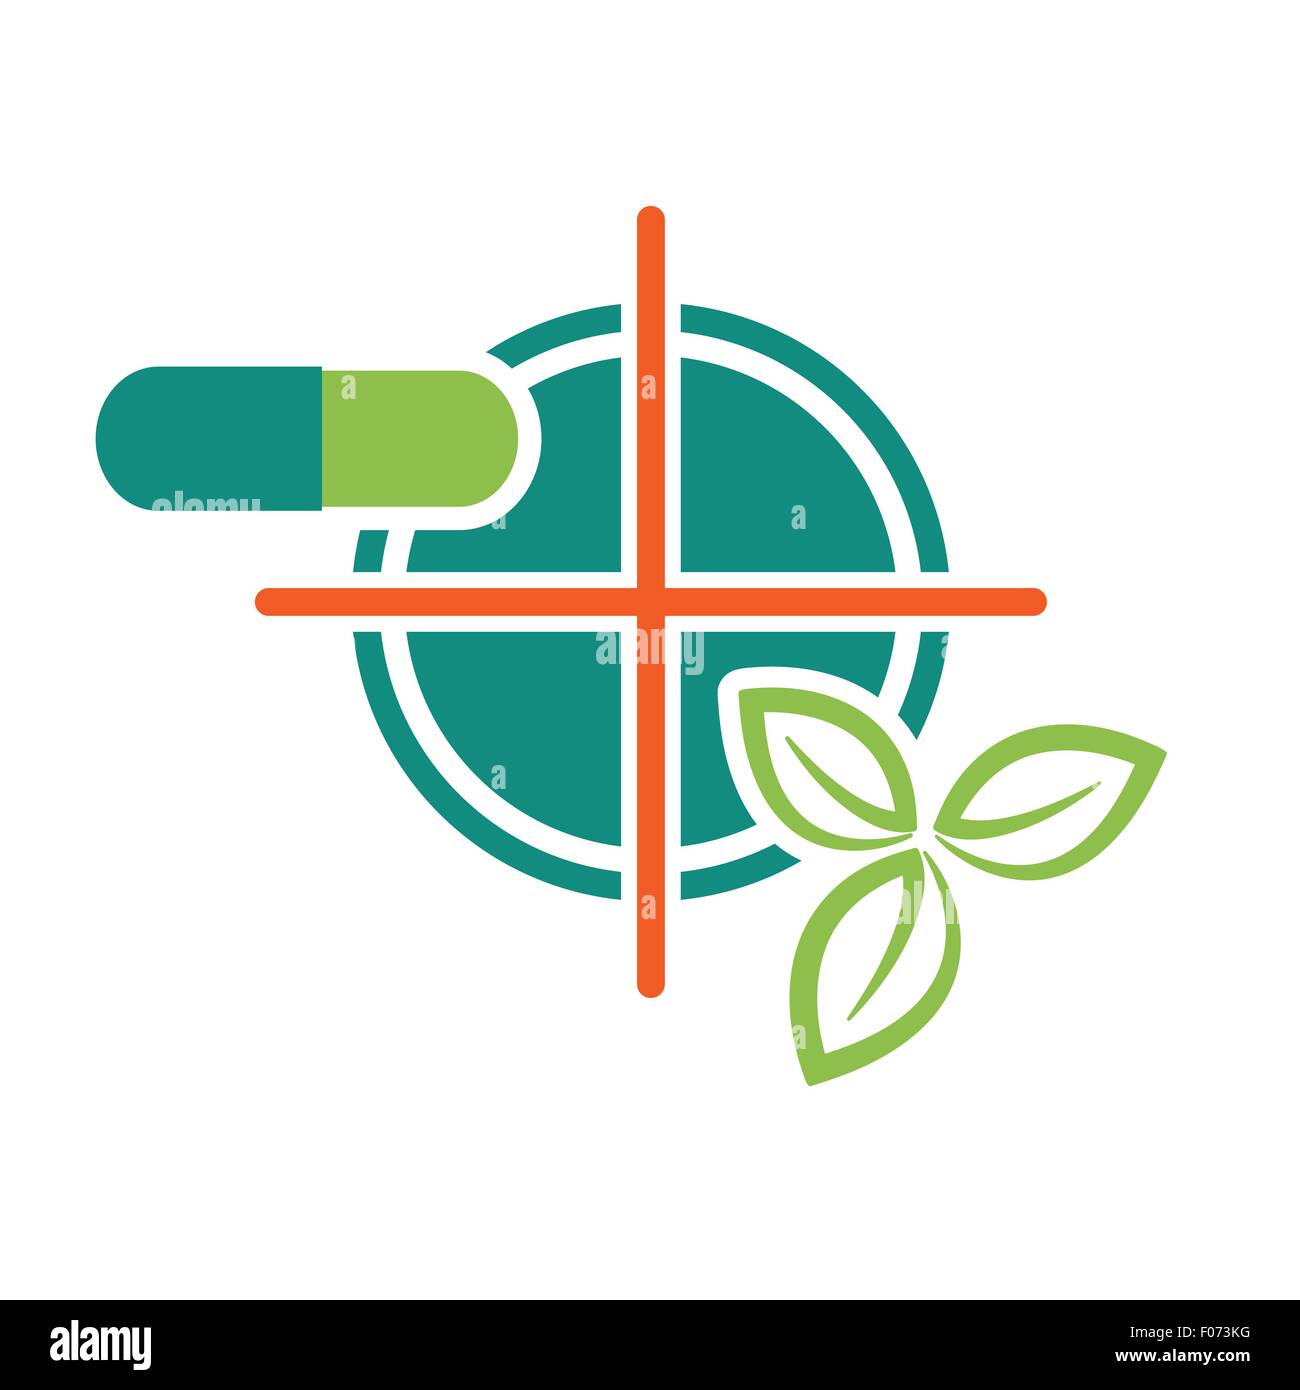 Pille und grüne Blätter auf Zielsymbol als natürliche ingradient Apotheke-Gesundheit-Konzept-Vektor-Illustration. Stock Vektor